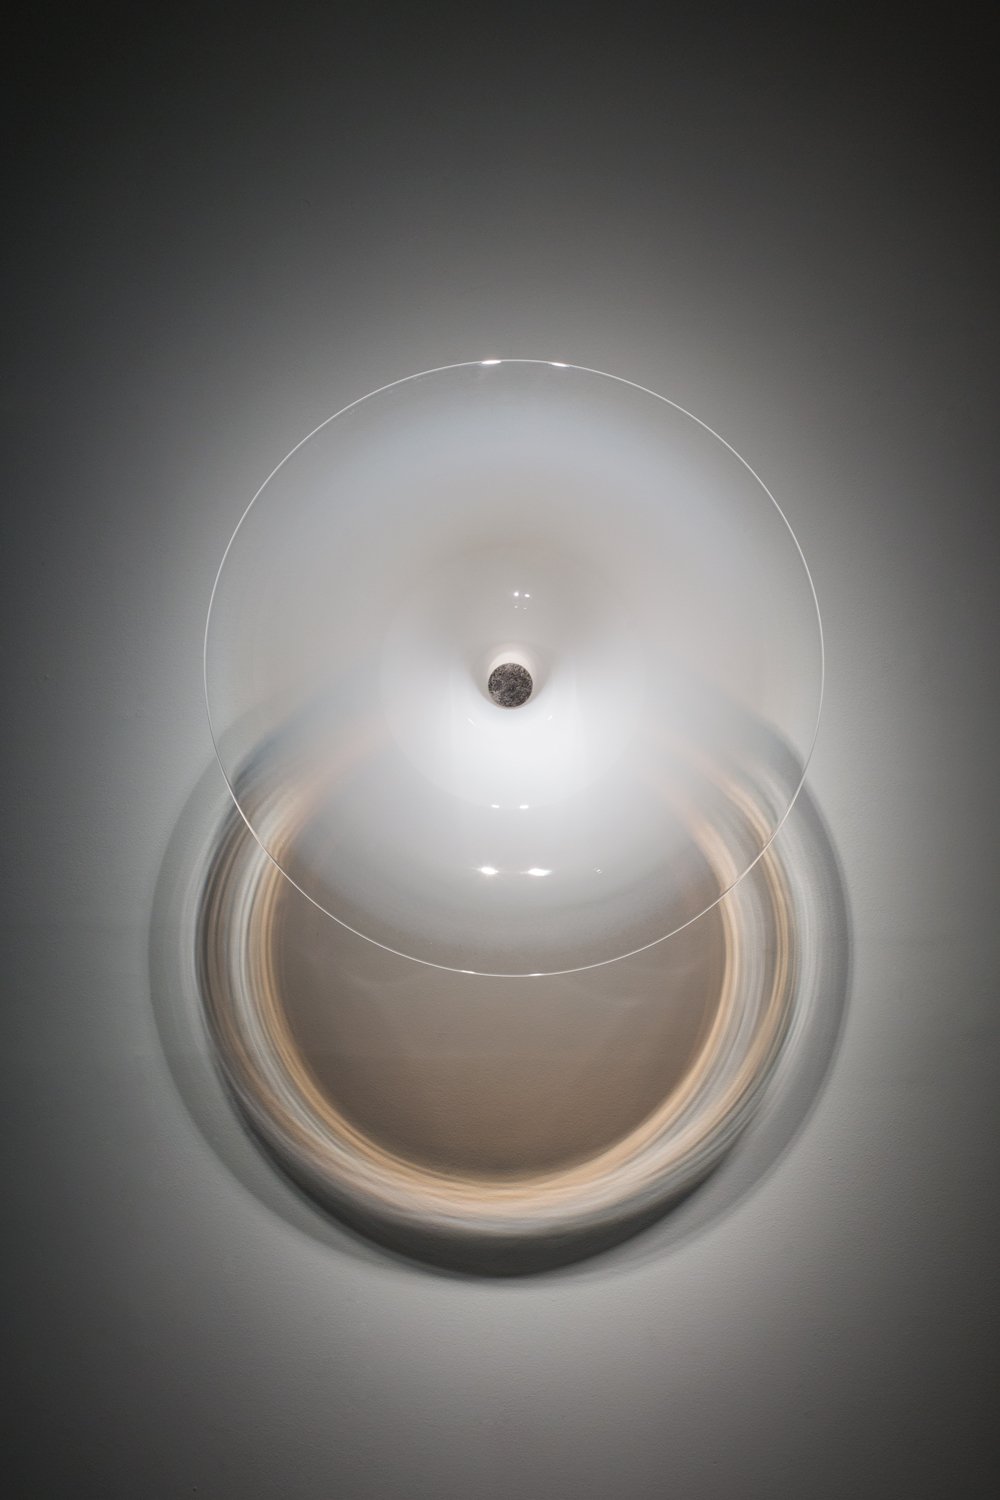  Silent Amplifier (Moonbow) Blown glass, silver leaf, light, aluminum, 23x23x11”, 2016 